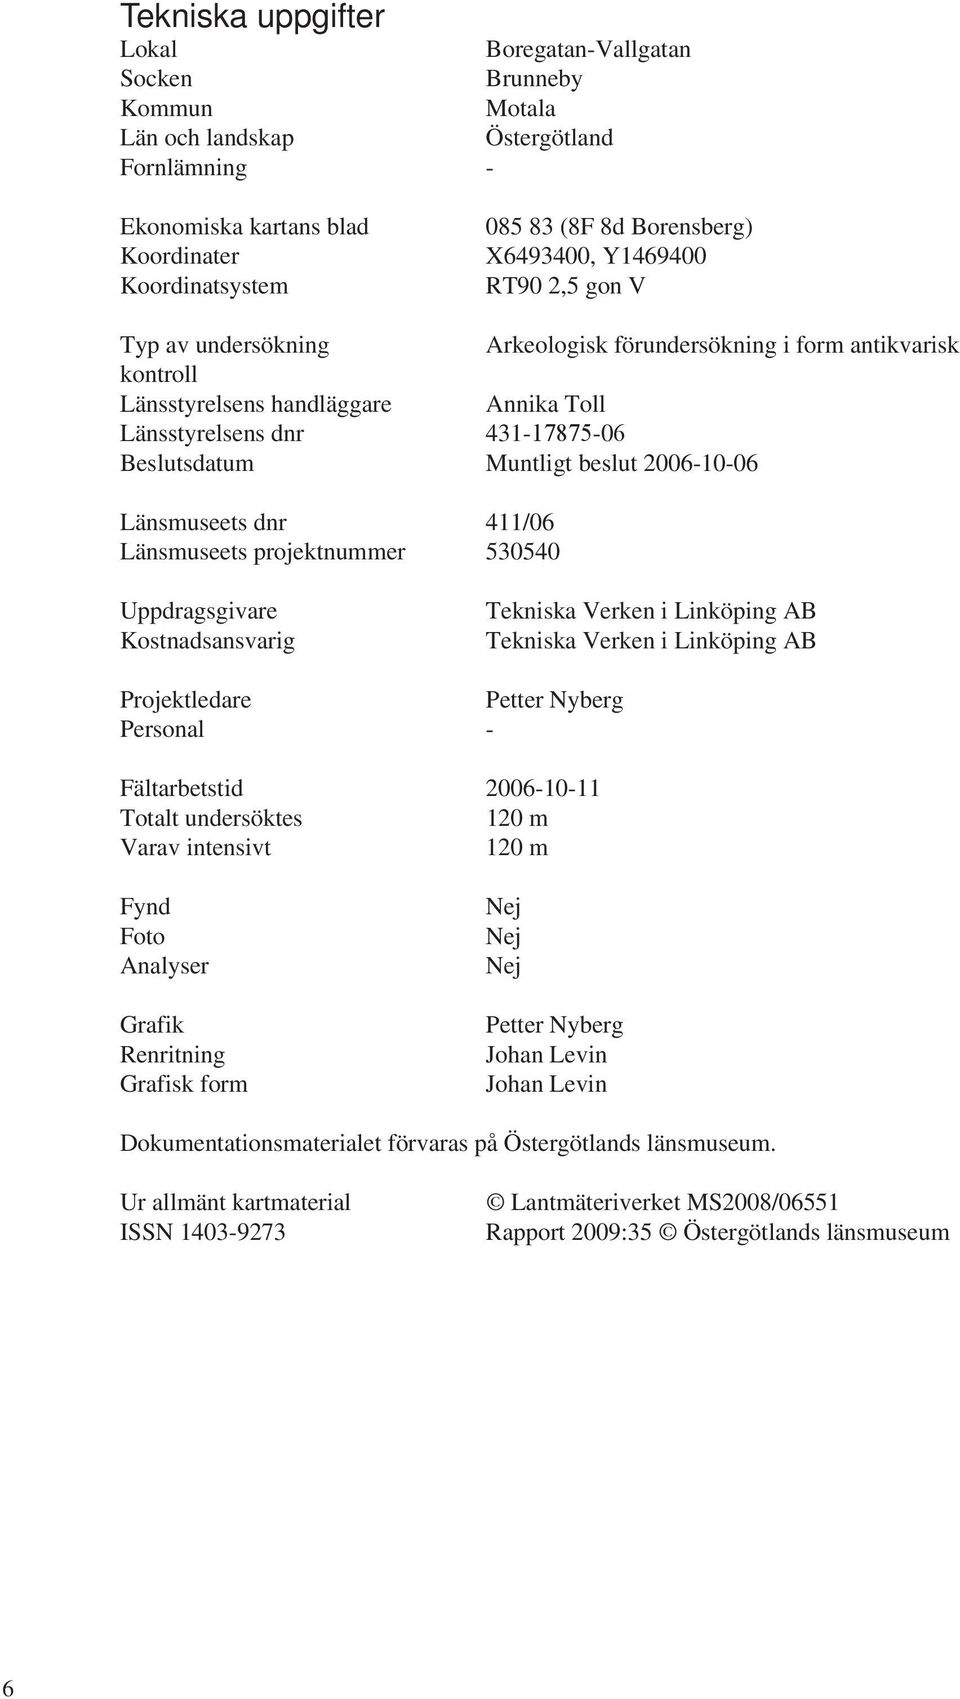 Muntligt beslut 2006-10-06 änsmuseets dnr 411/06 änsmuseets projektnummer 530540 Uppdragsgivare Kostnadsansvarig Tekniska Verken i inköping AB Tekniska Verken i inköping AB Projektledare Petter